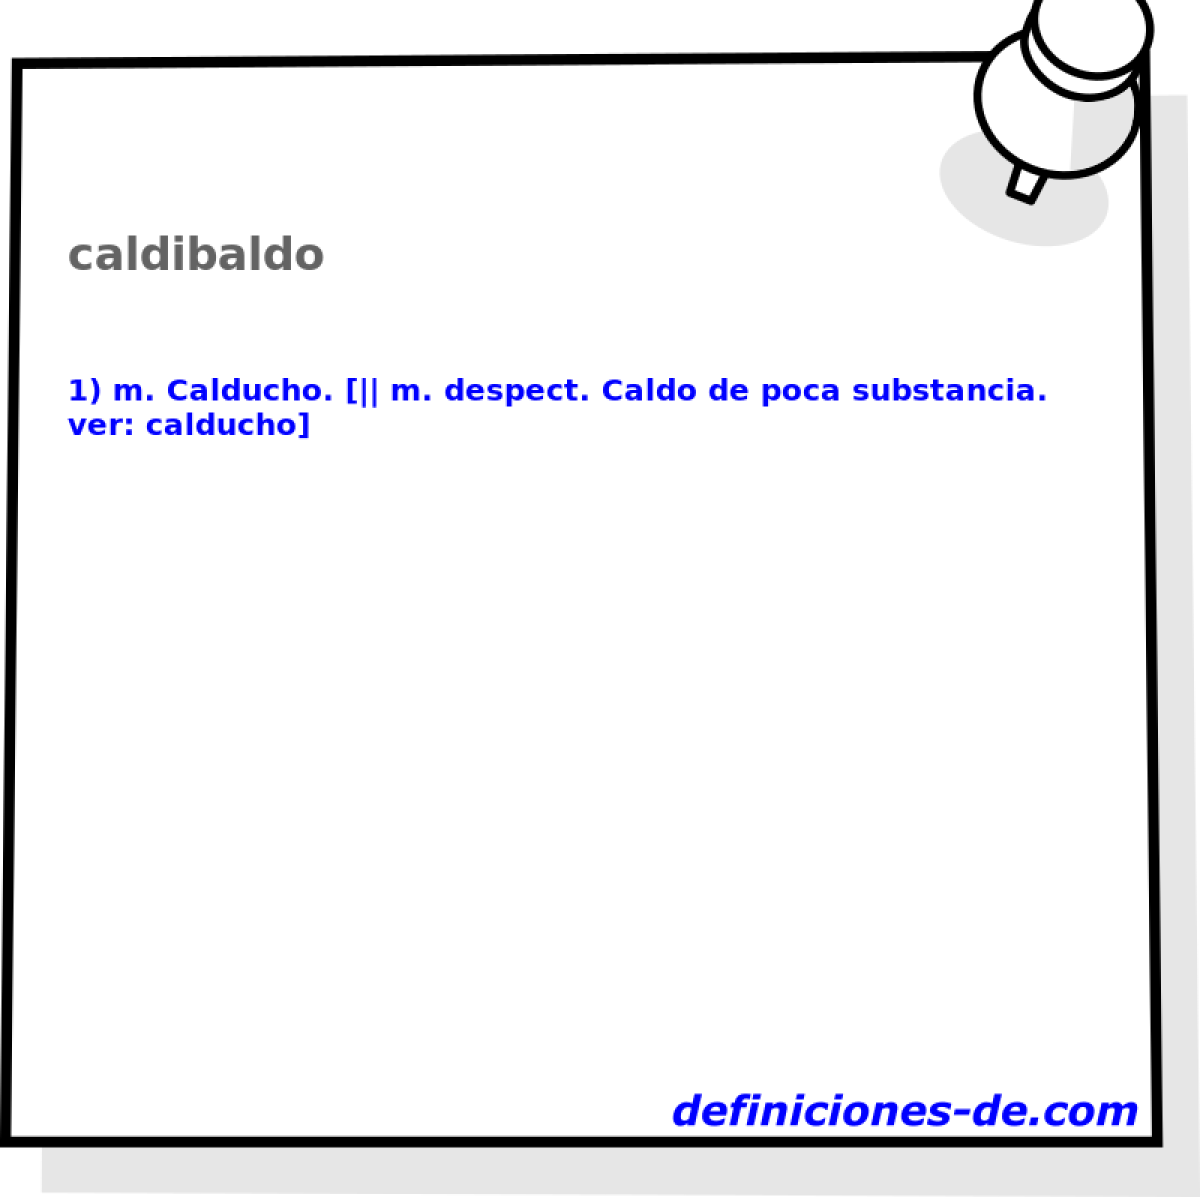 caldibaldo 